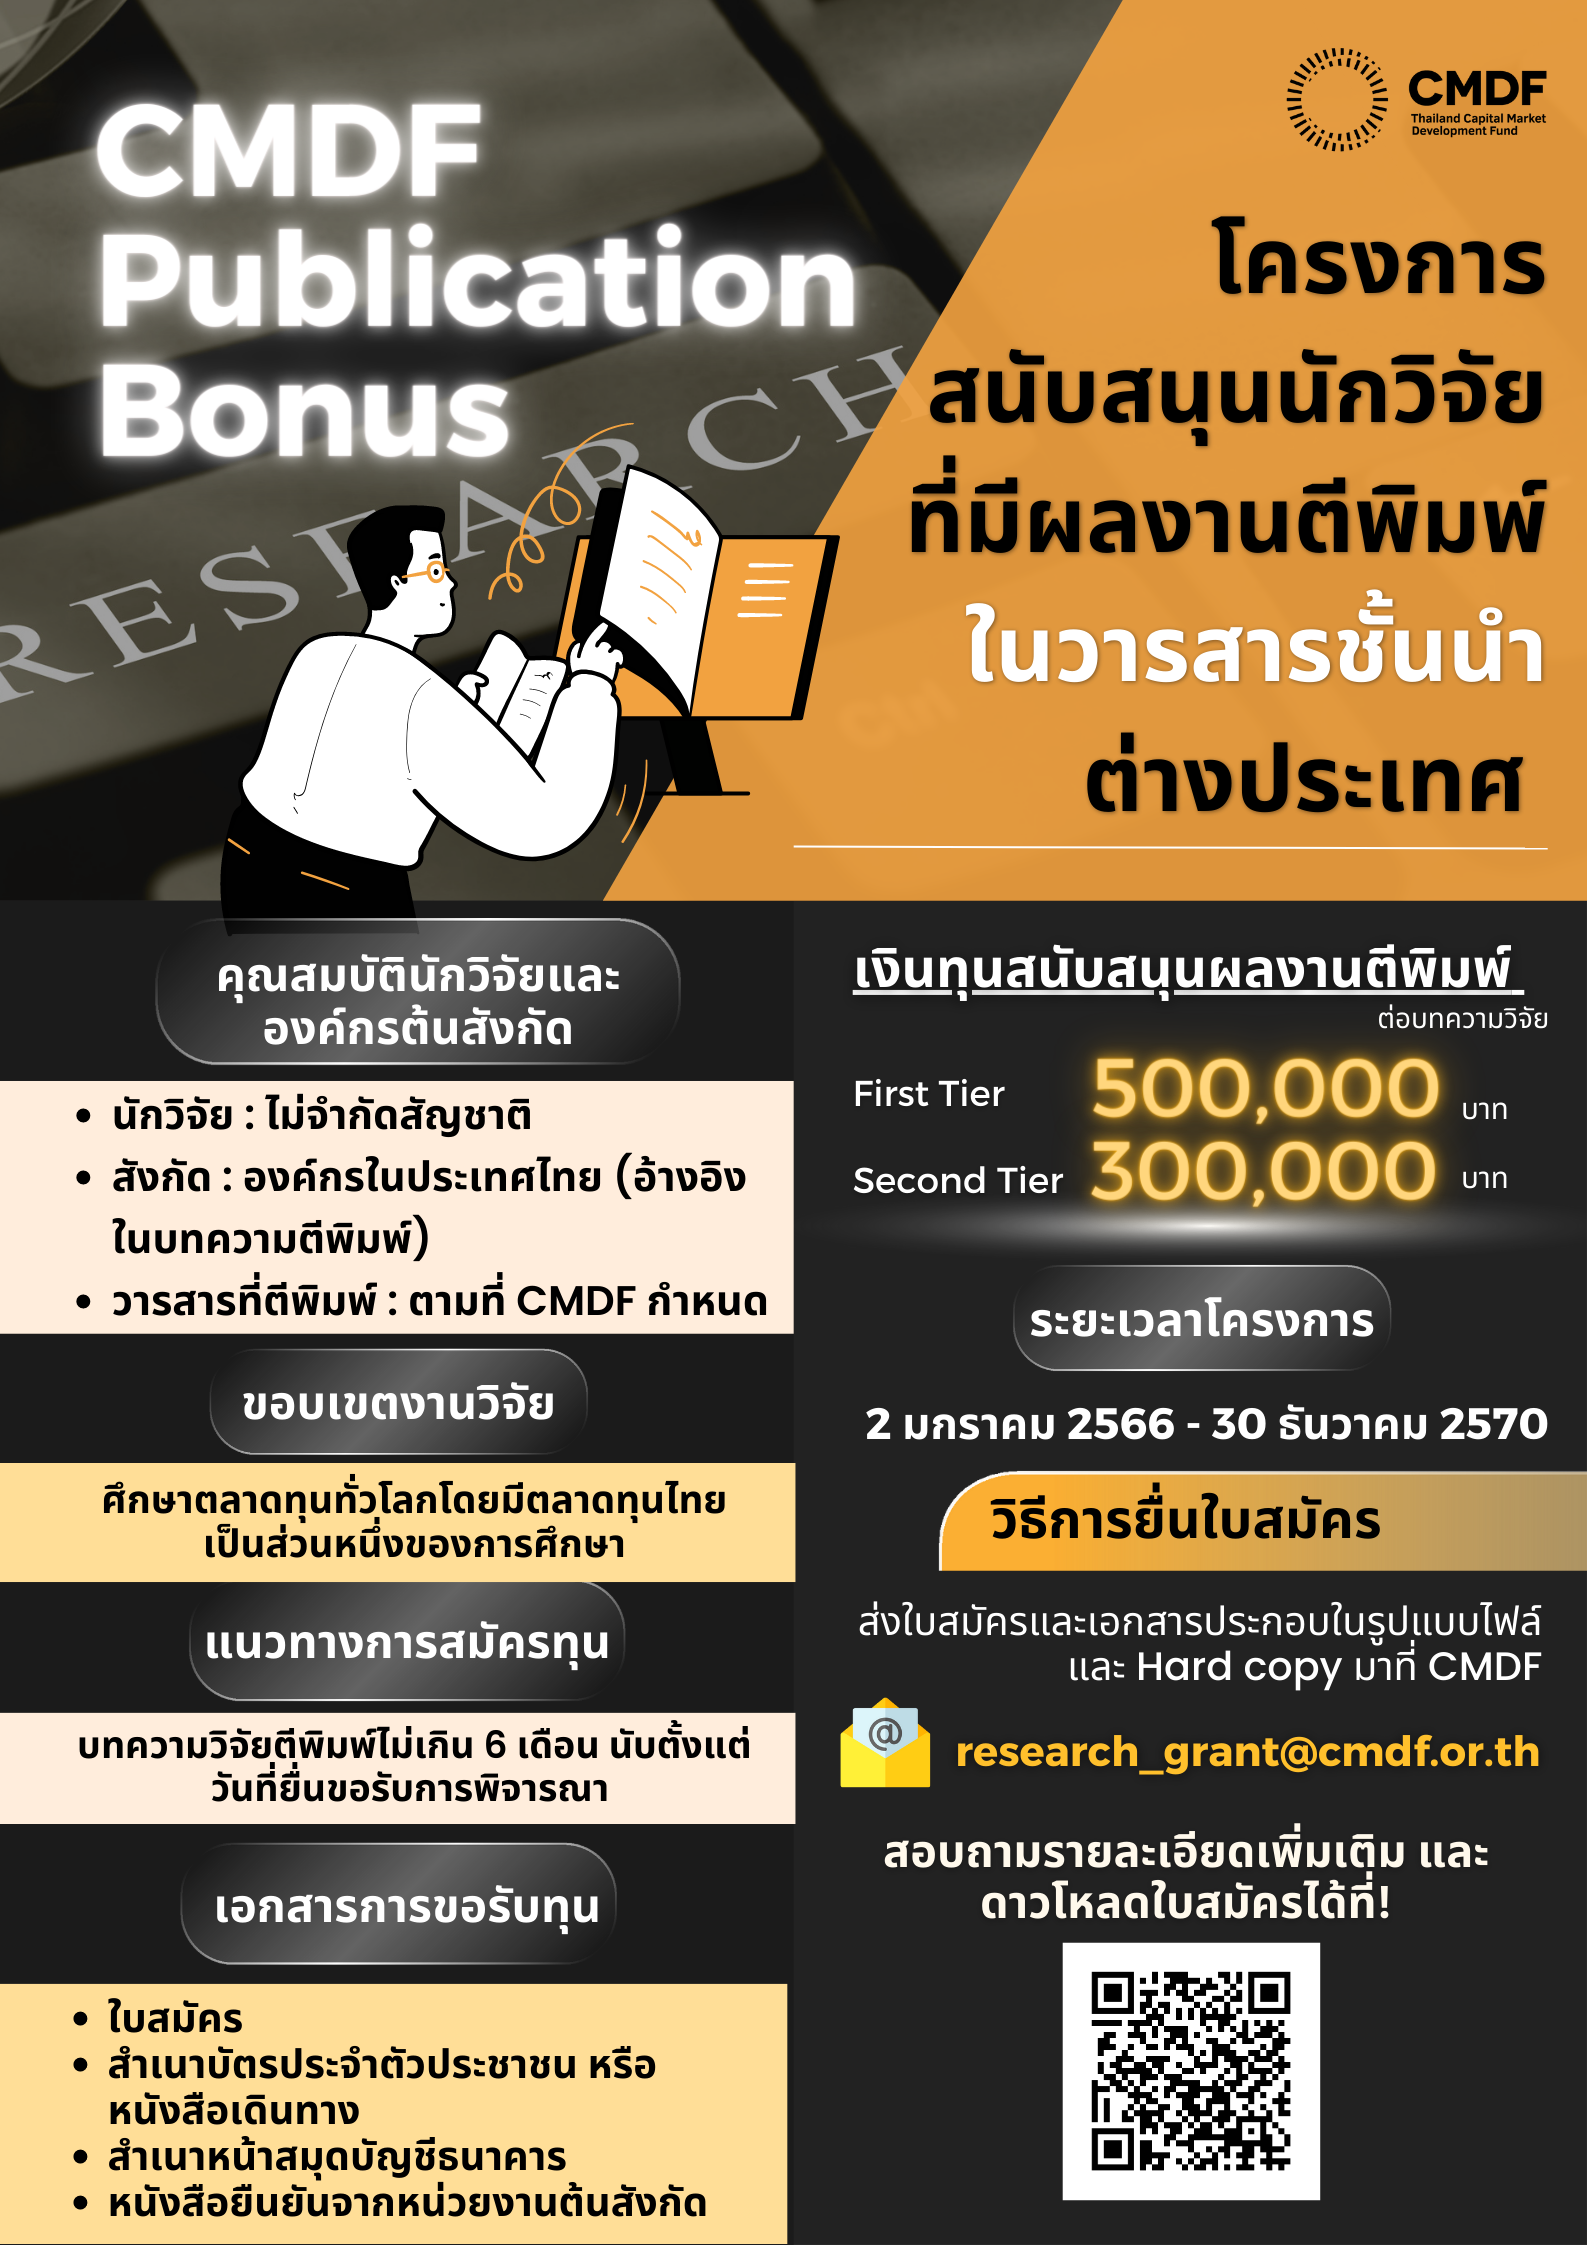 การรับสมัครการสนับสนุนงานวิจัยและข้อมูลของสถาบันวิจัยเพื่อตลาดทุน (Thailand Capital Market Research Institute : CMRI)